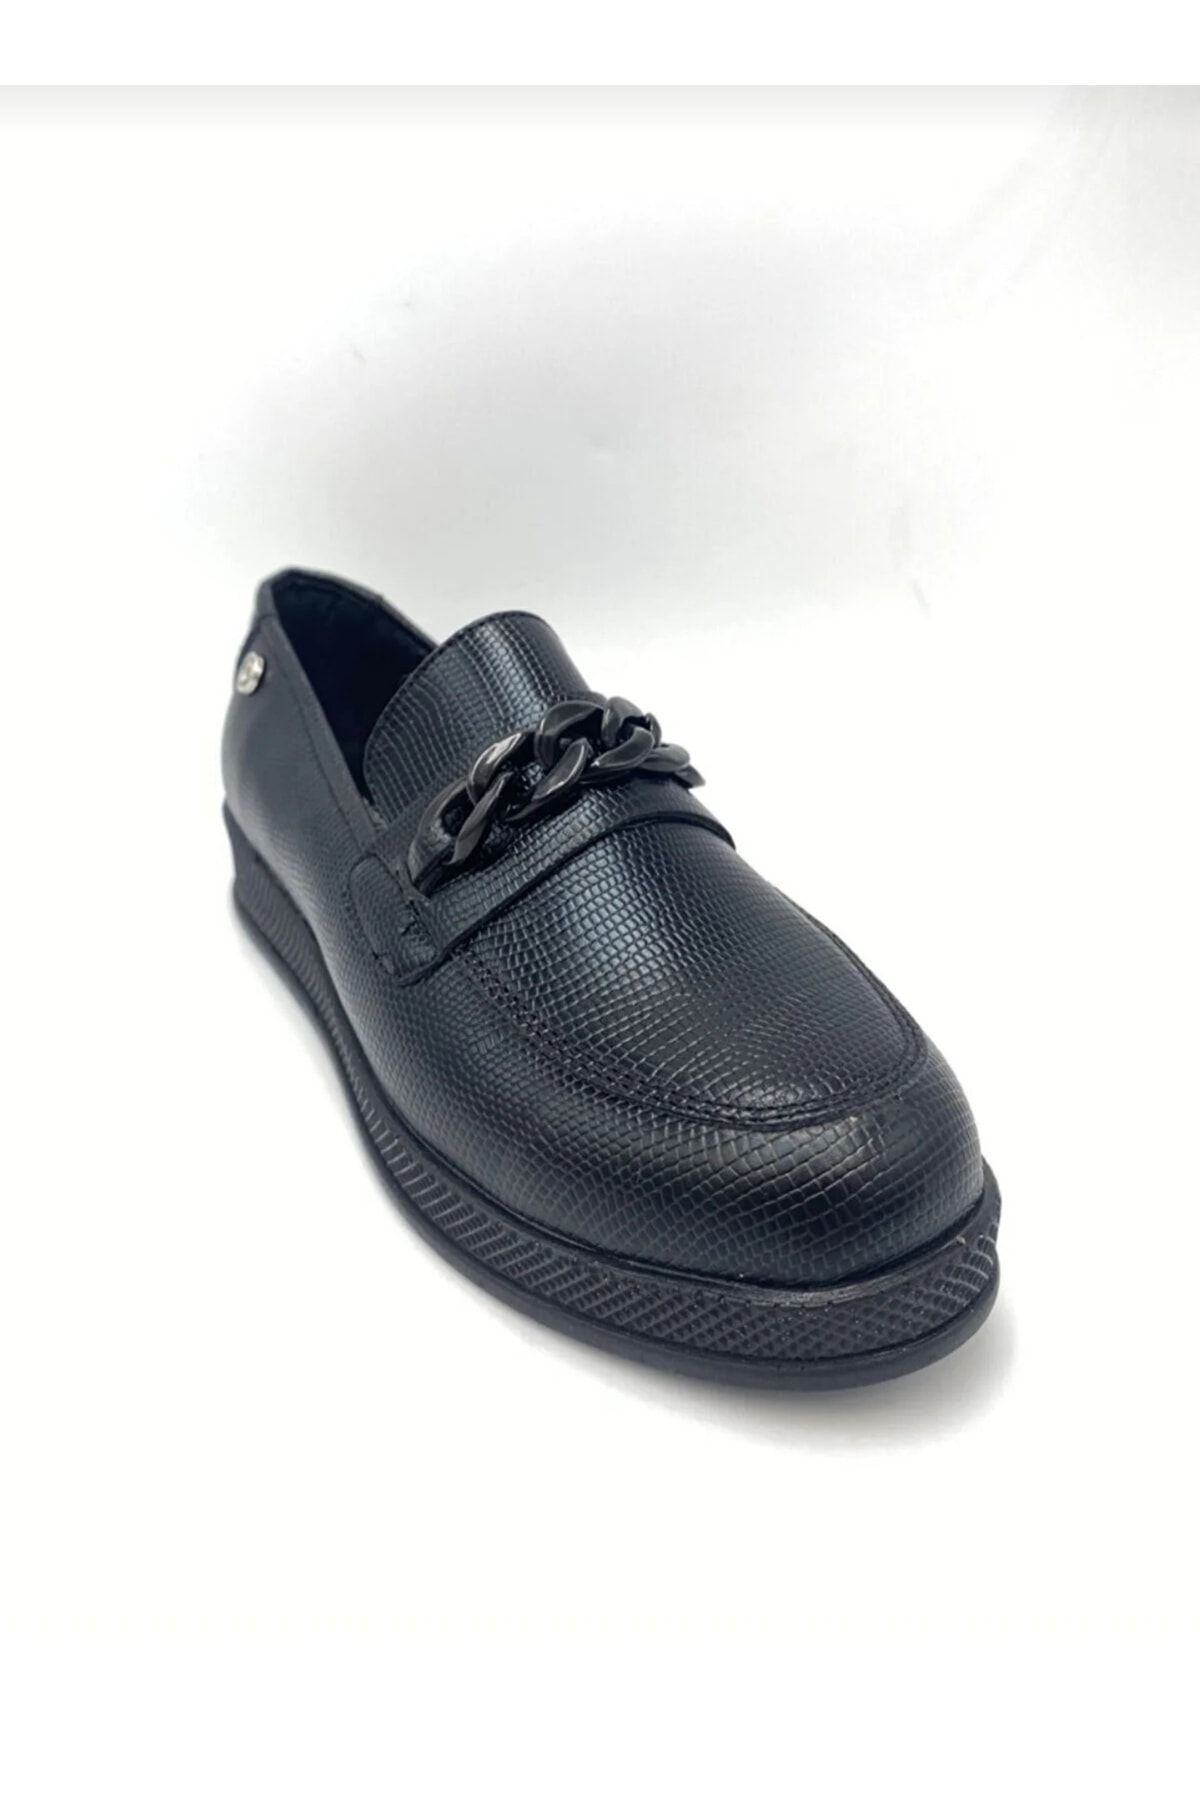 Pierre Cardin Klasik Günlük Ayakkabı